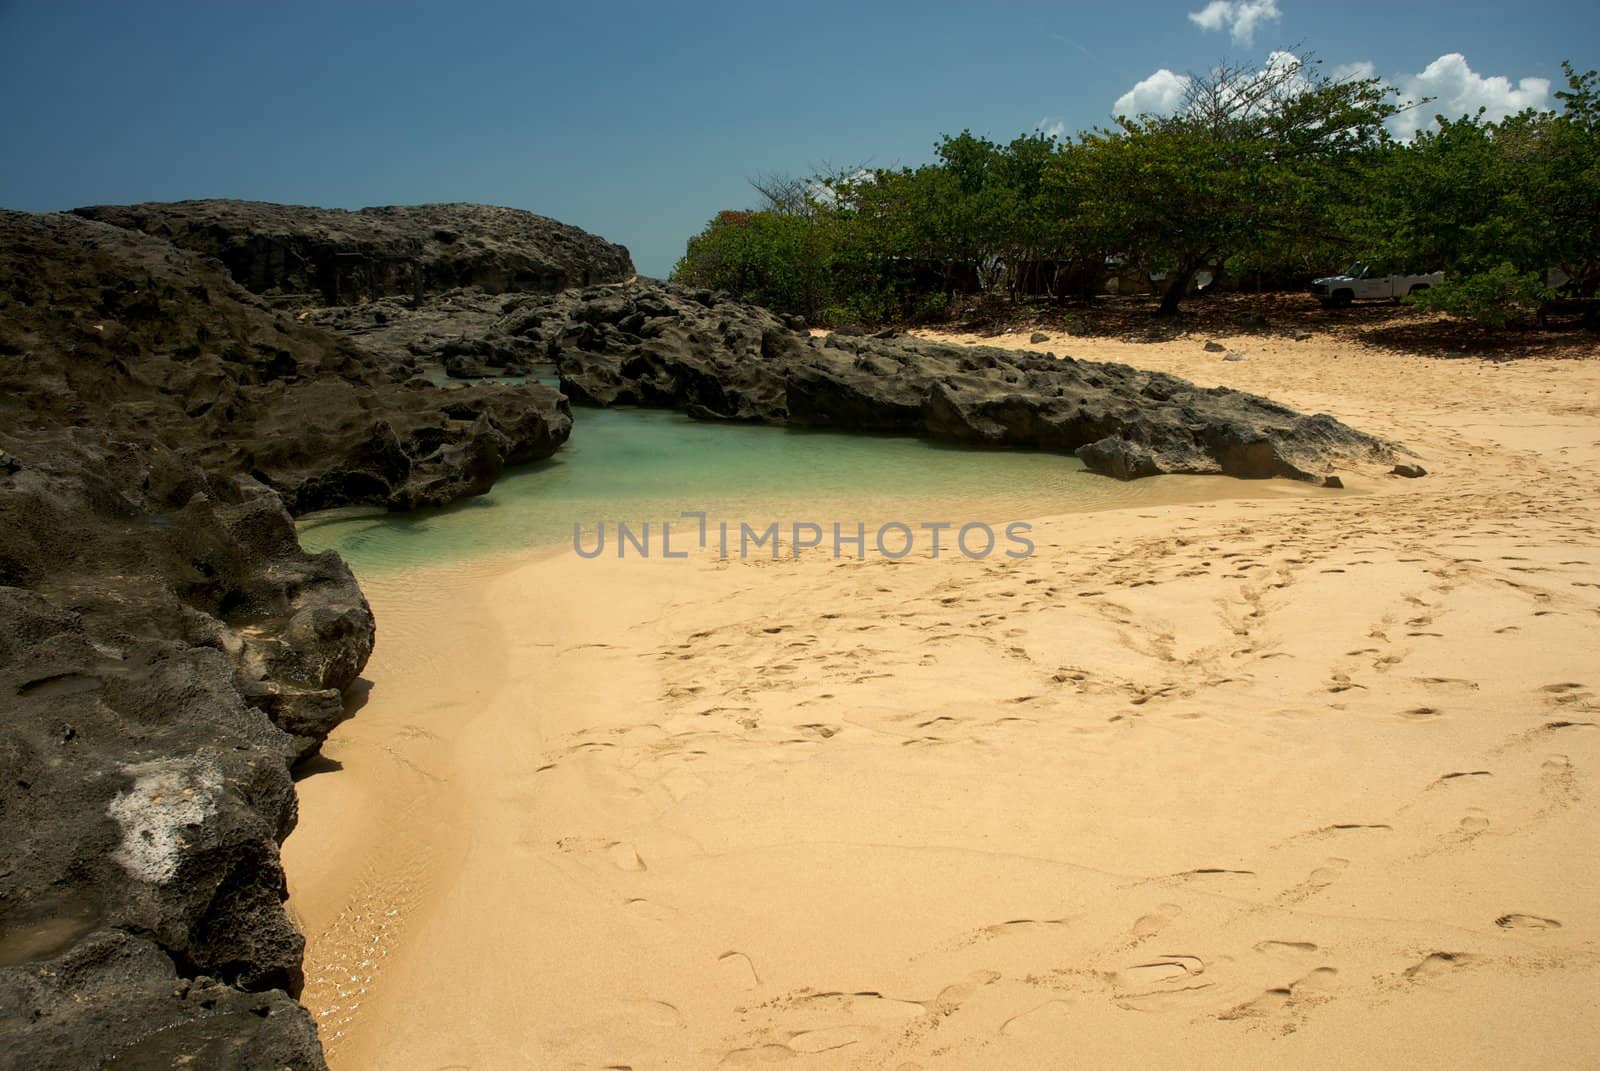 Mar Chiquita Cove & Cueva de las Golondrianas in Puerto Rico by jedphoto